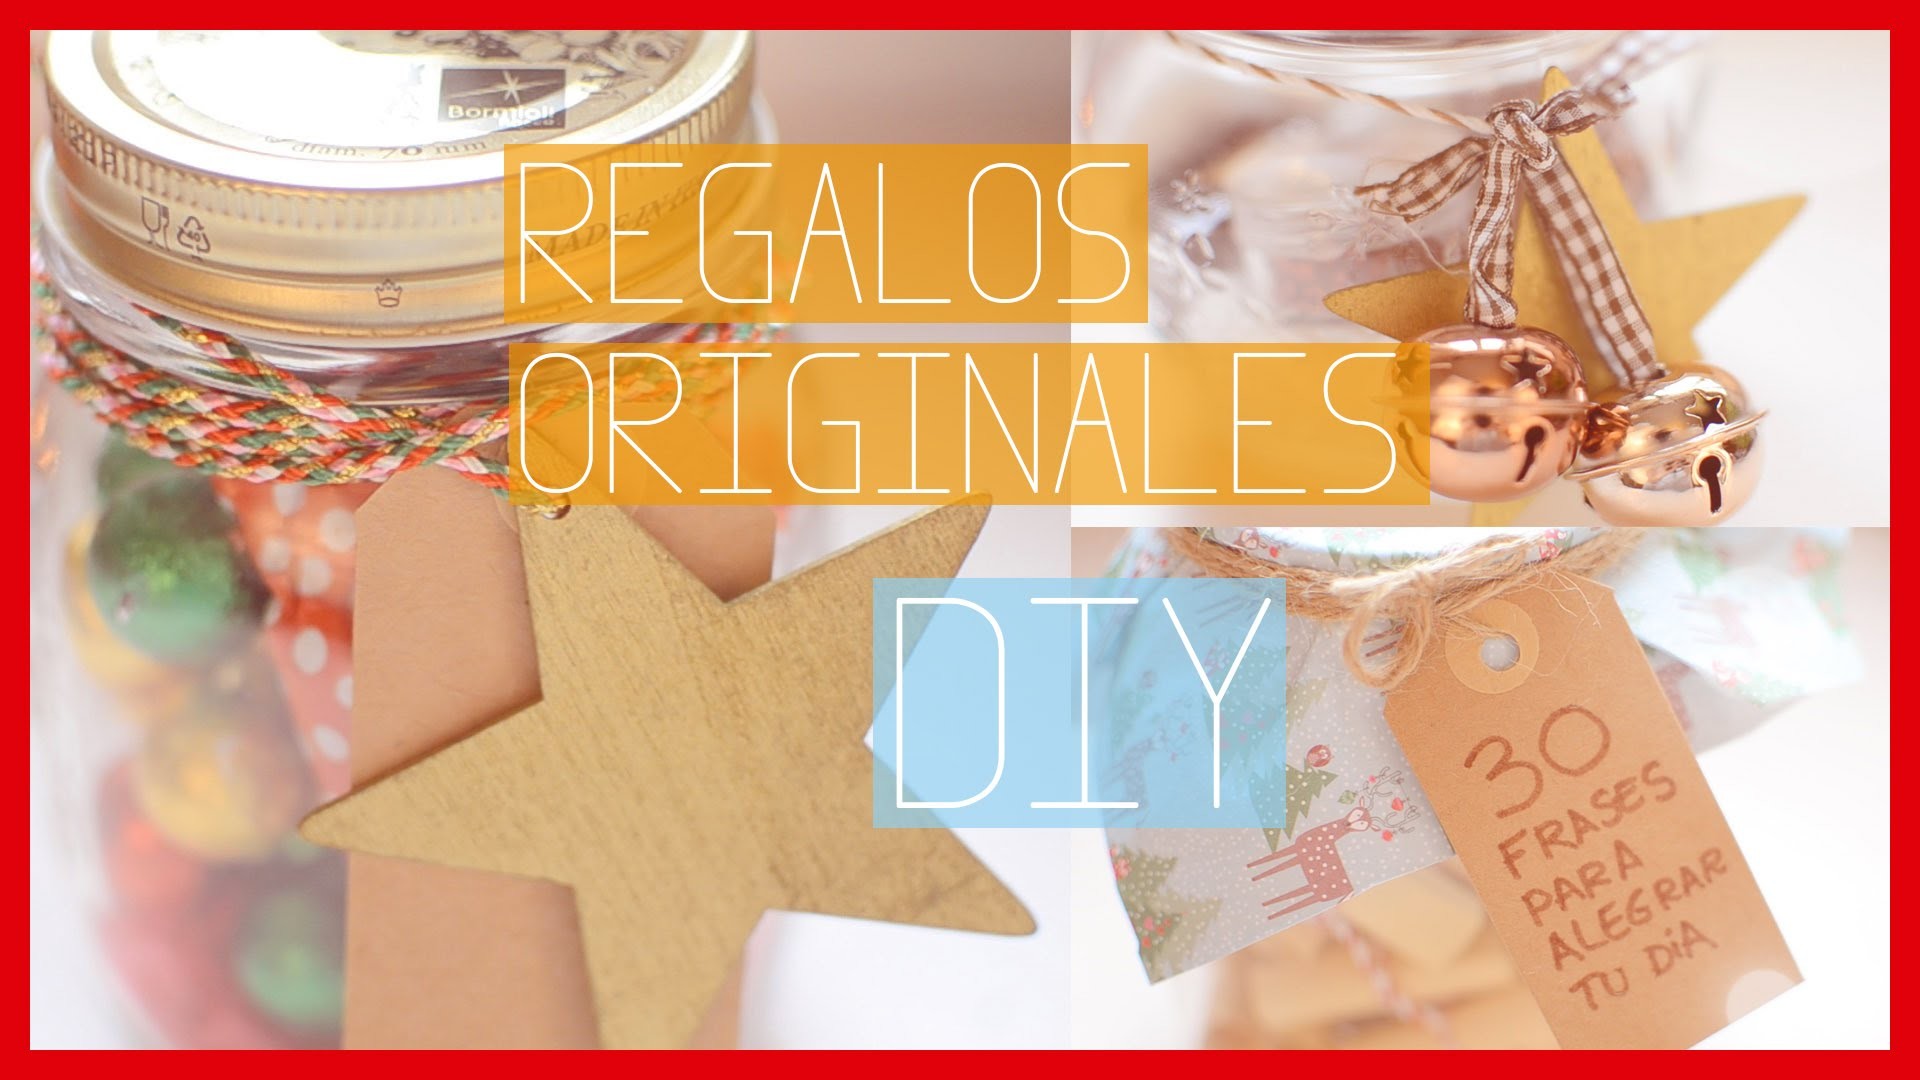 IDEAS DE REGALOS ORIGINALES - DIY | Ale90cb